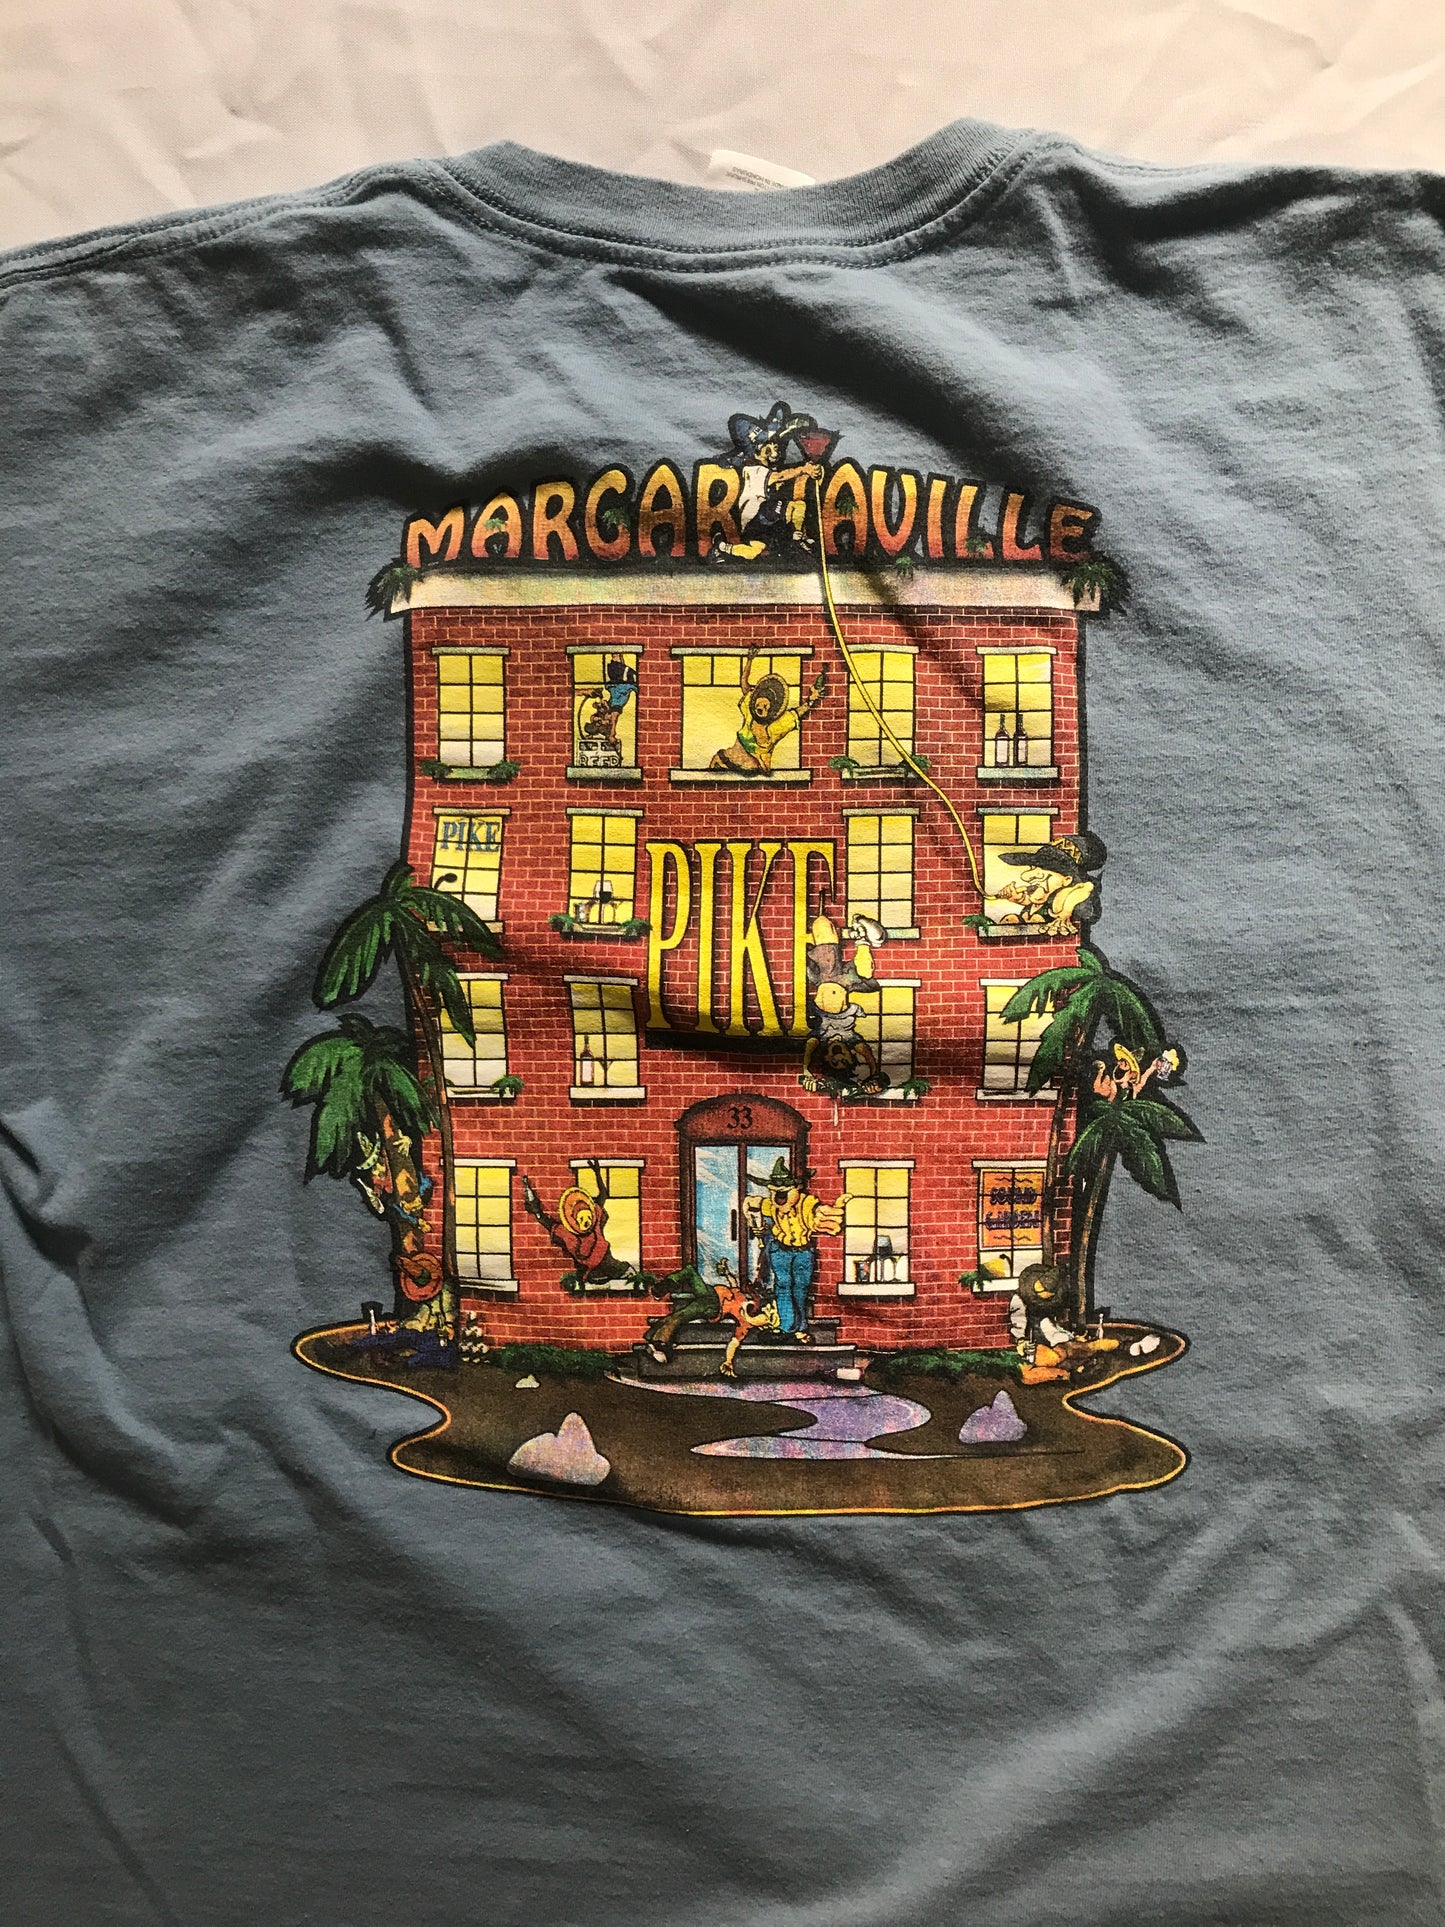 Pike's Margaritaville T-shirt